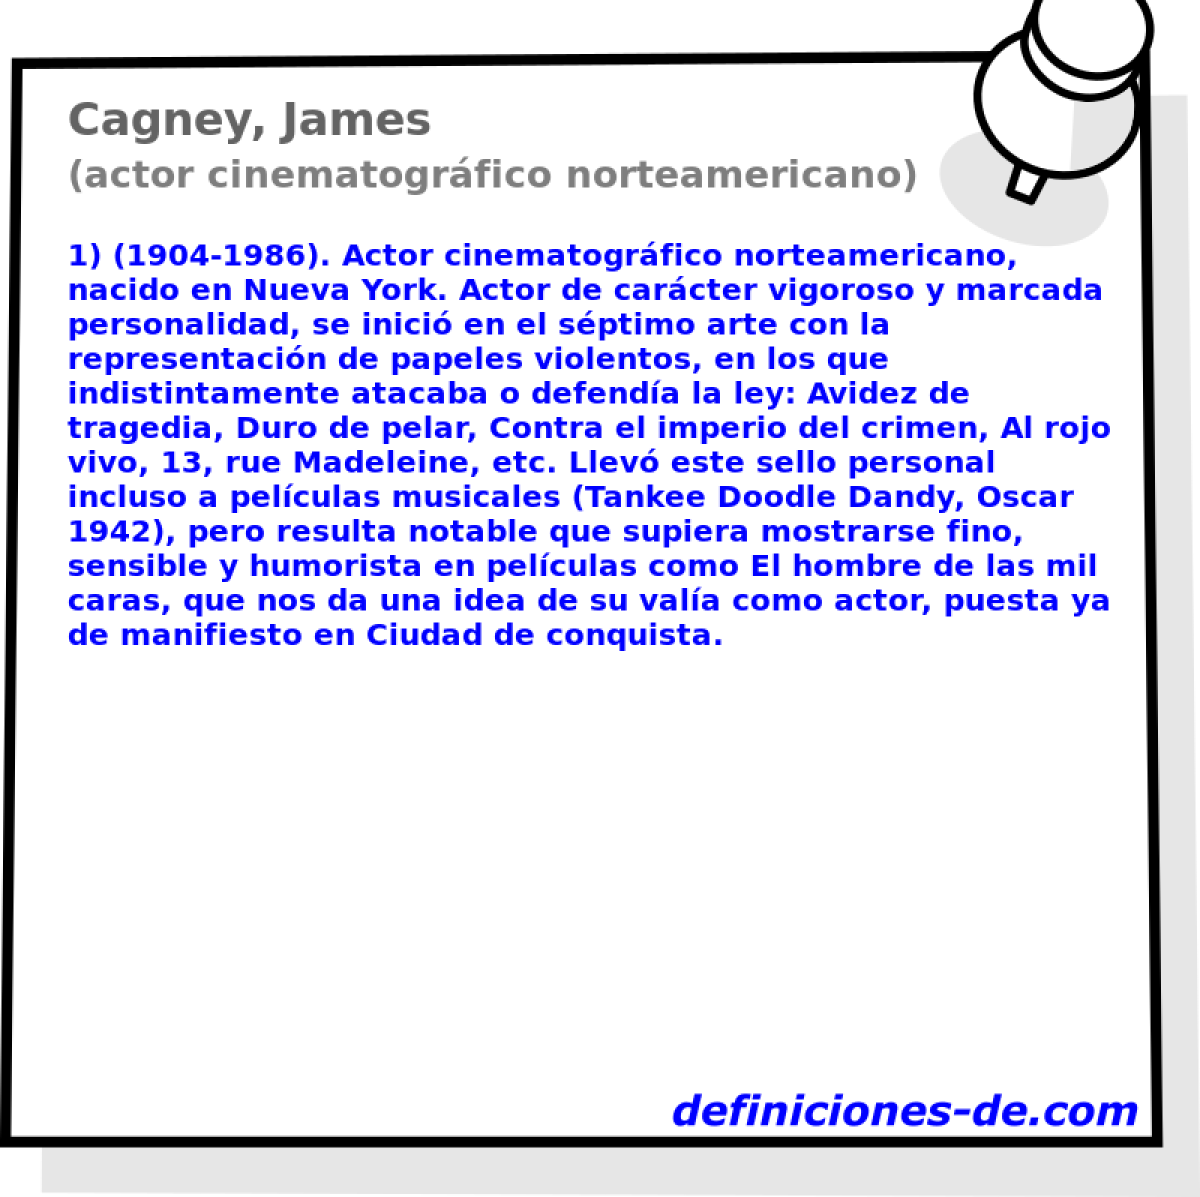 Cagney, James (actor cinematogrfico norteamericano)